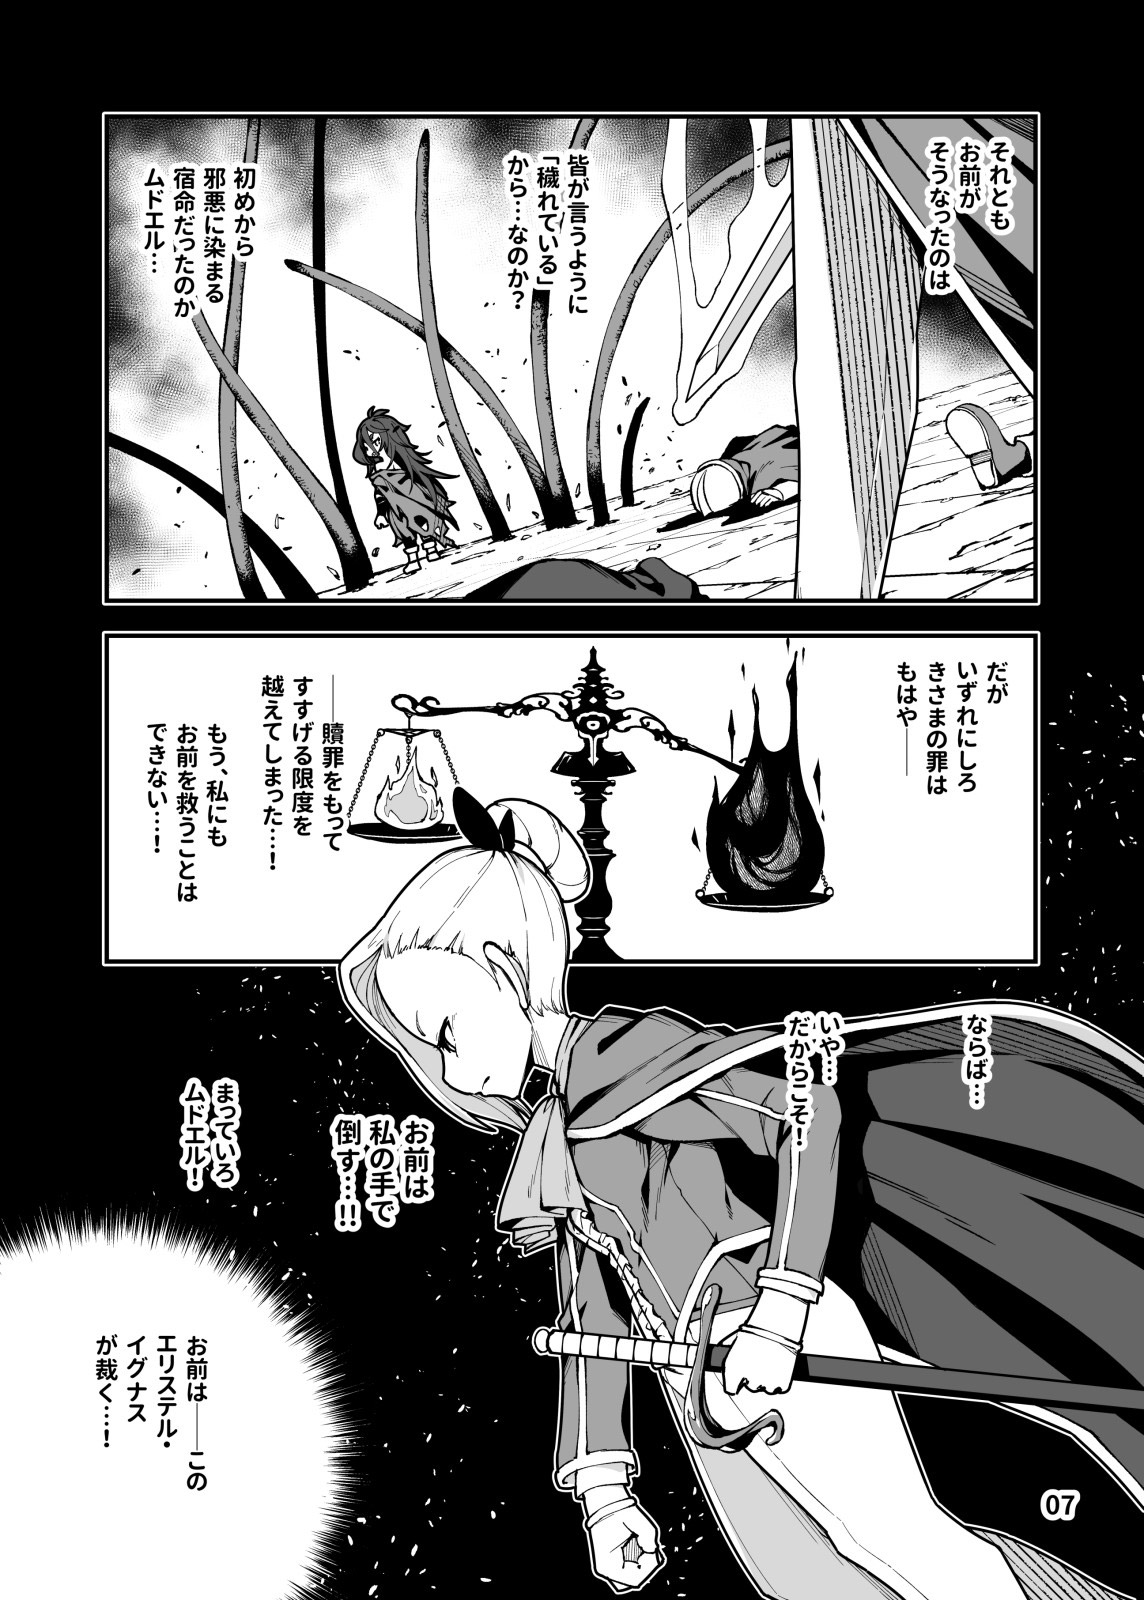 聖魔騎士エリス 〜ザコ猿化の呪い〜 後編のサンプル画像1